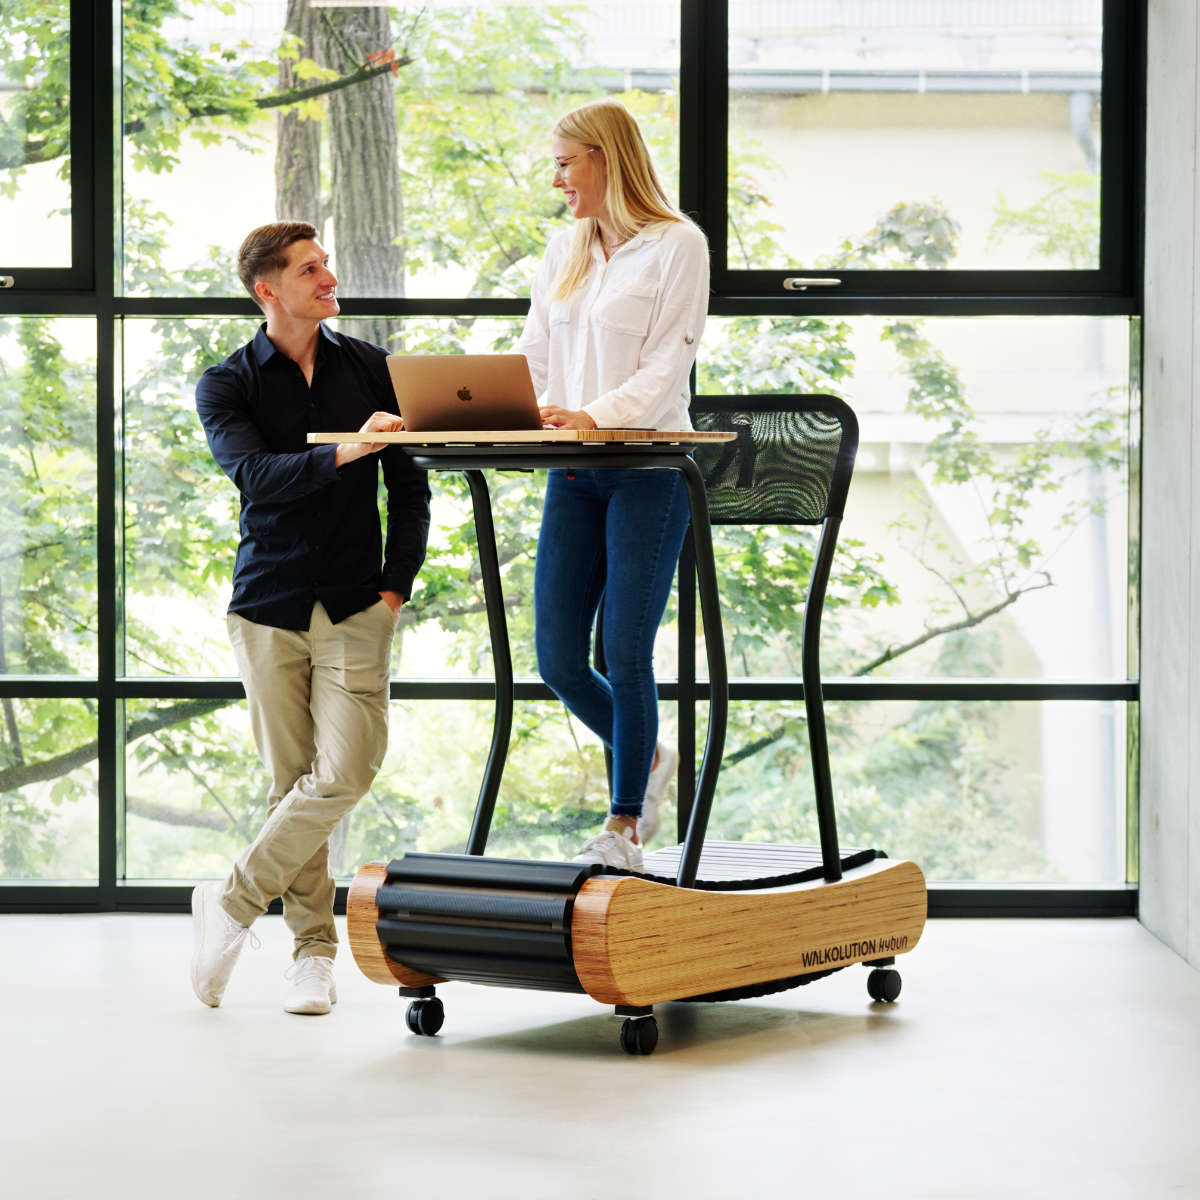 Wooden treadmill, manual treadmill, walking treadmill, treadmill desk, height adjustable desk, soft WALKOLUTION 